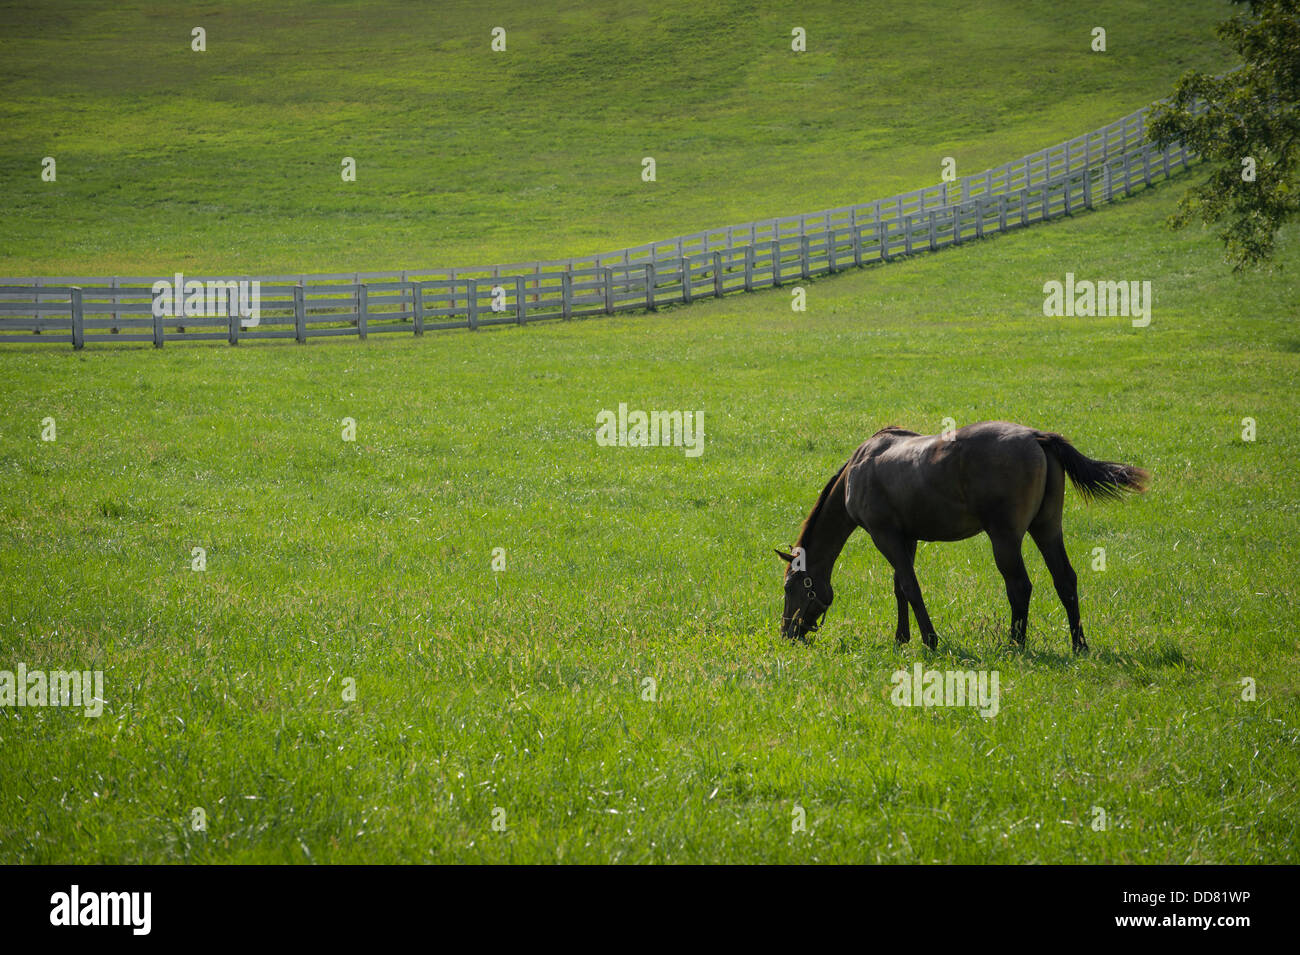 Dans la zone de pâturage de chevaux avec clôture blanche Lexington, Kentucky, USA Banque D'Images